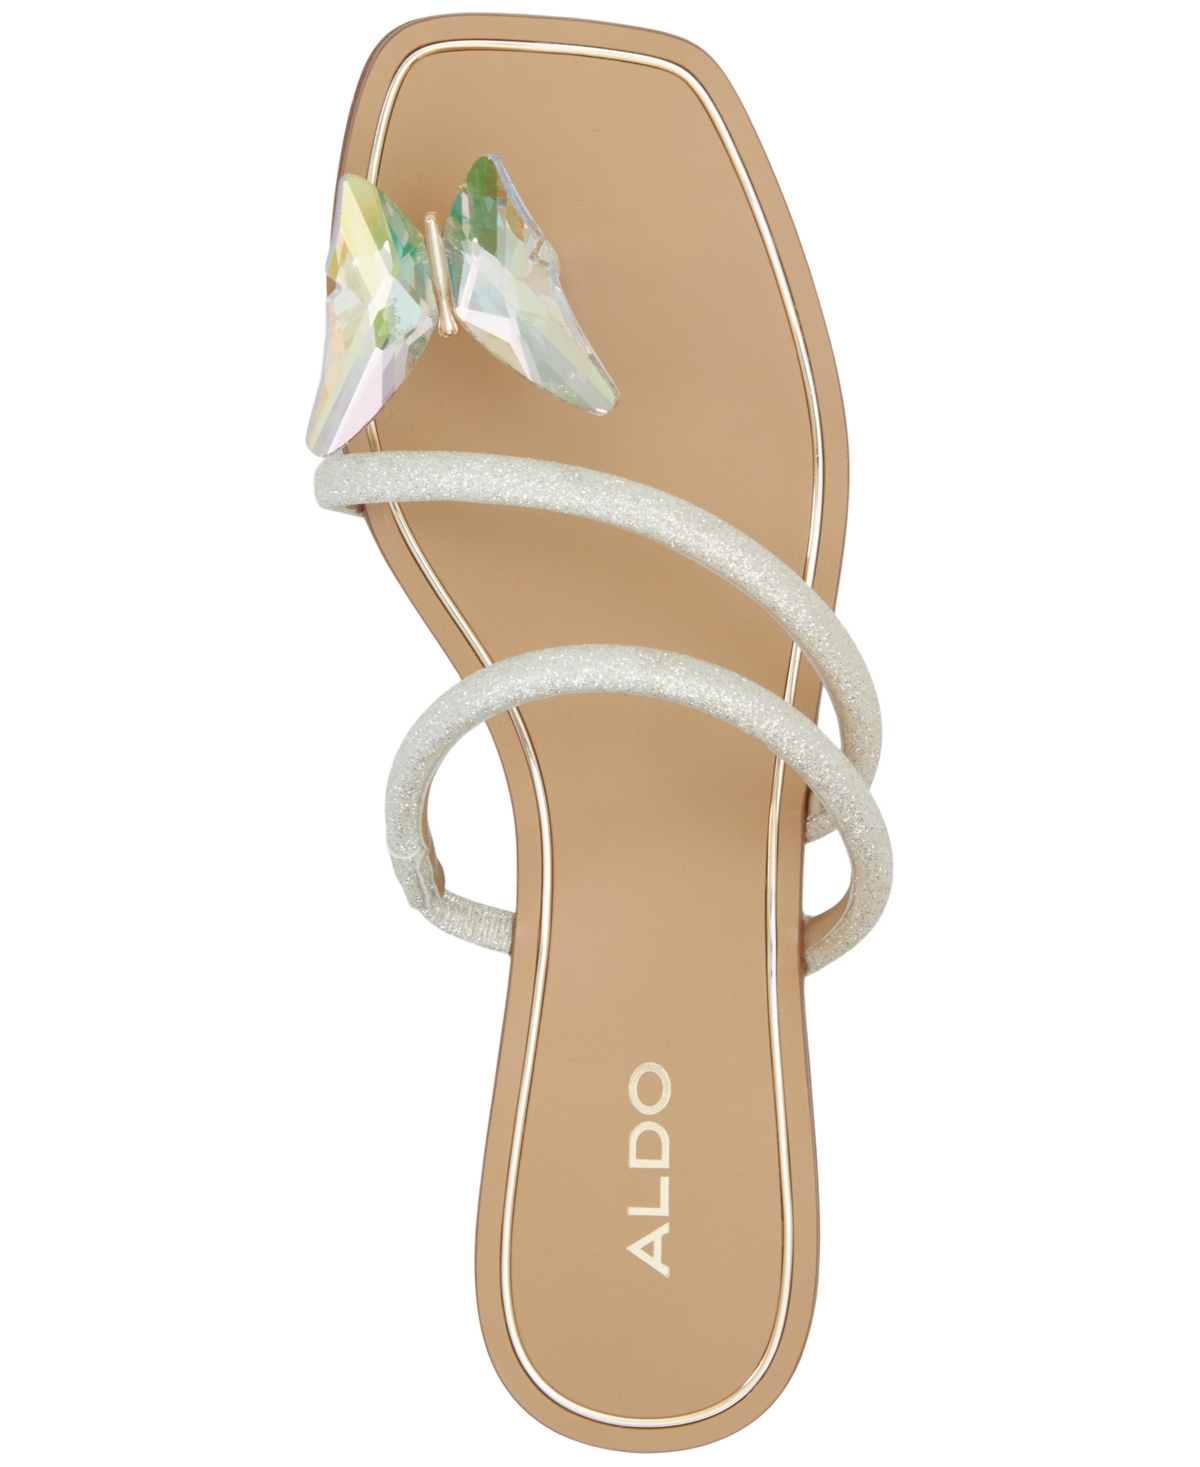 Shop Aldo Women's Garberia Butterfly Toe-post Flat Sandals In Metallic Multi Glitter